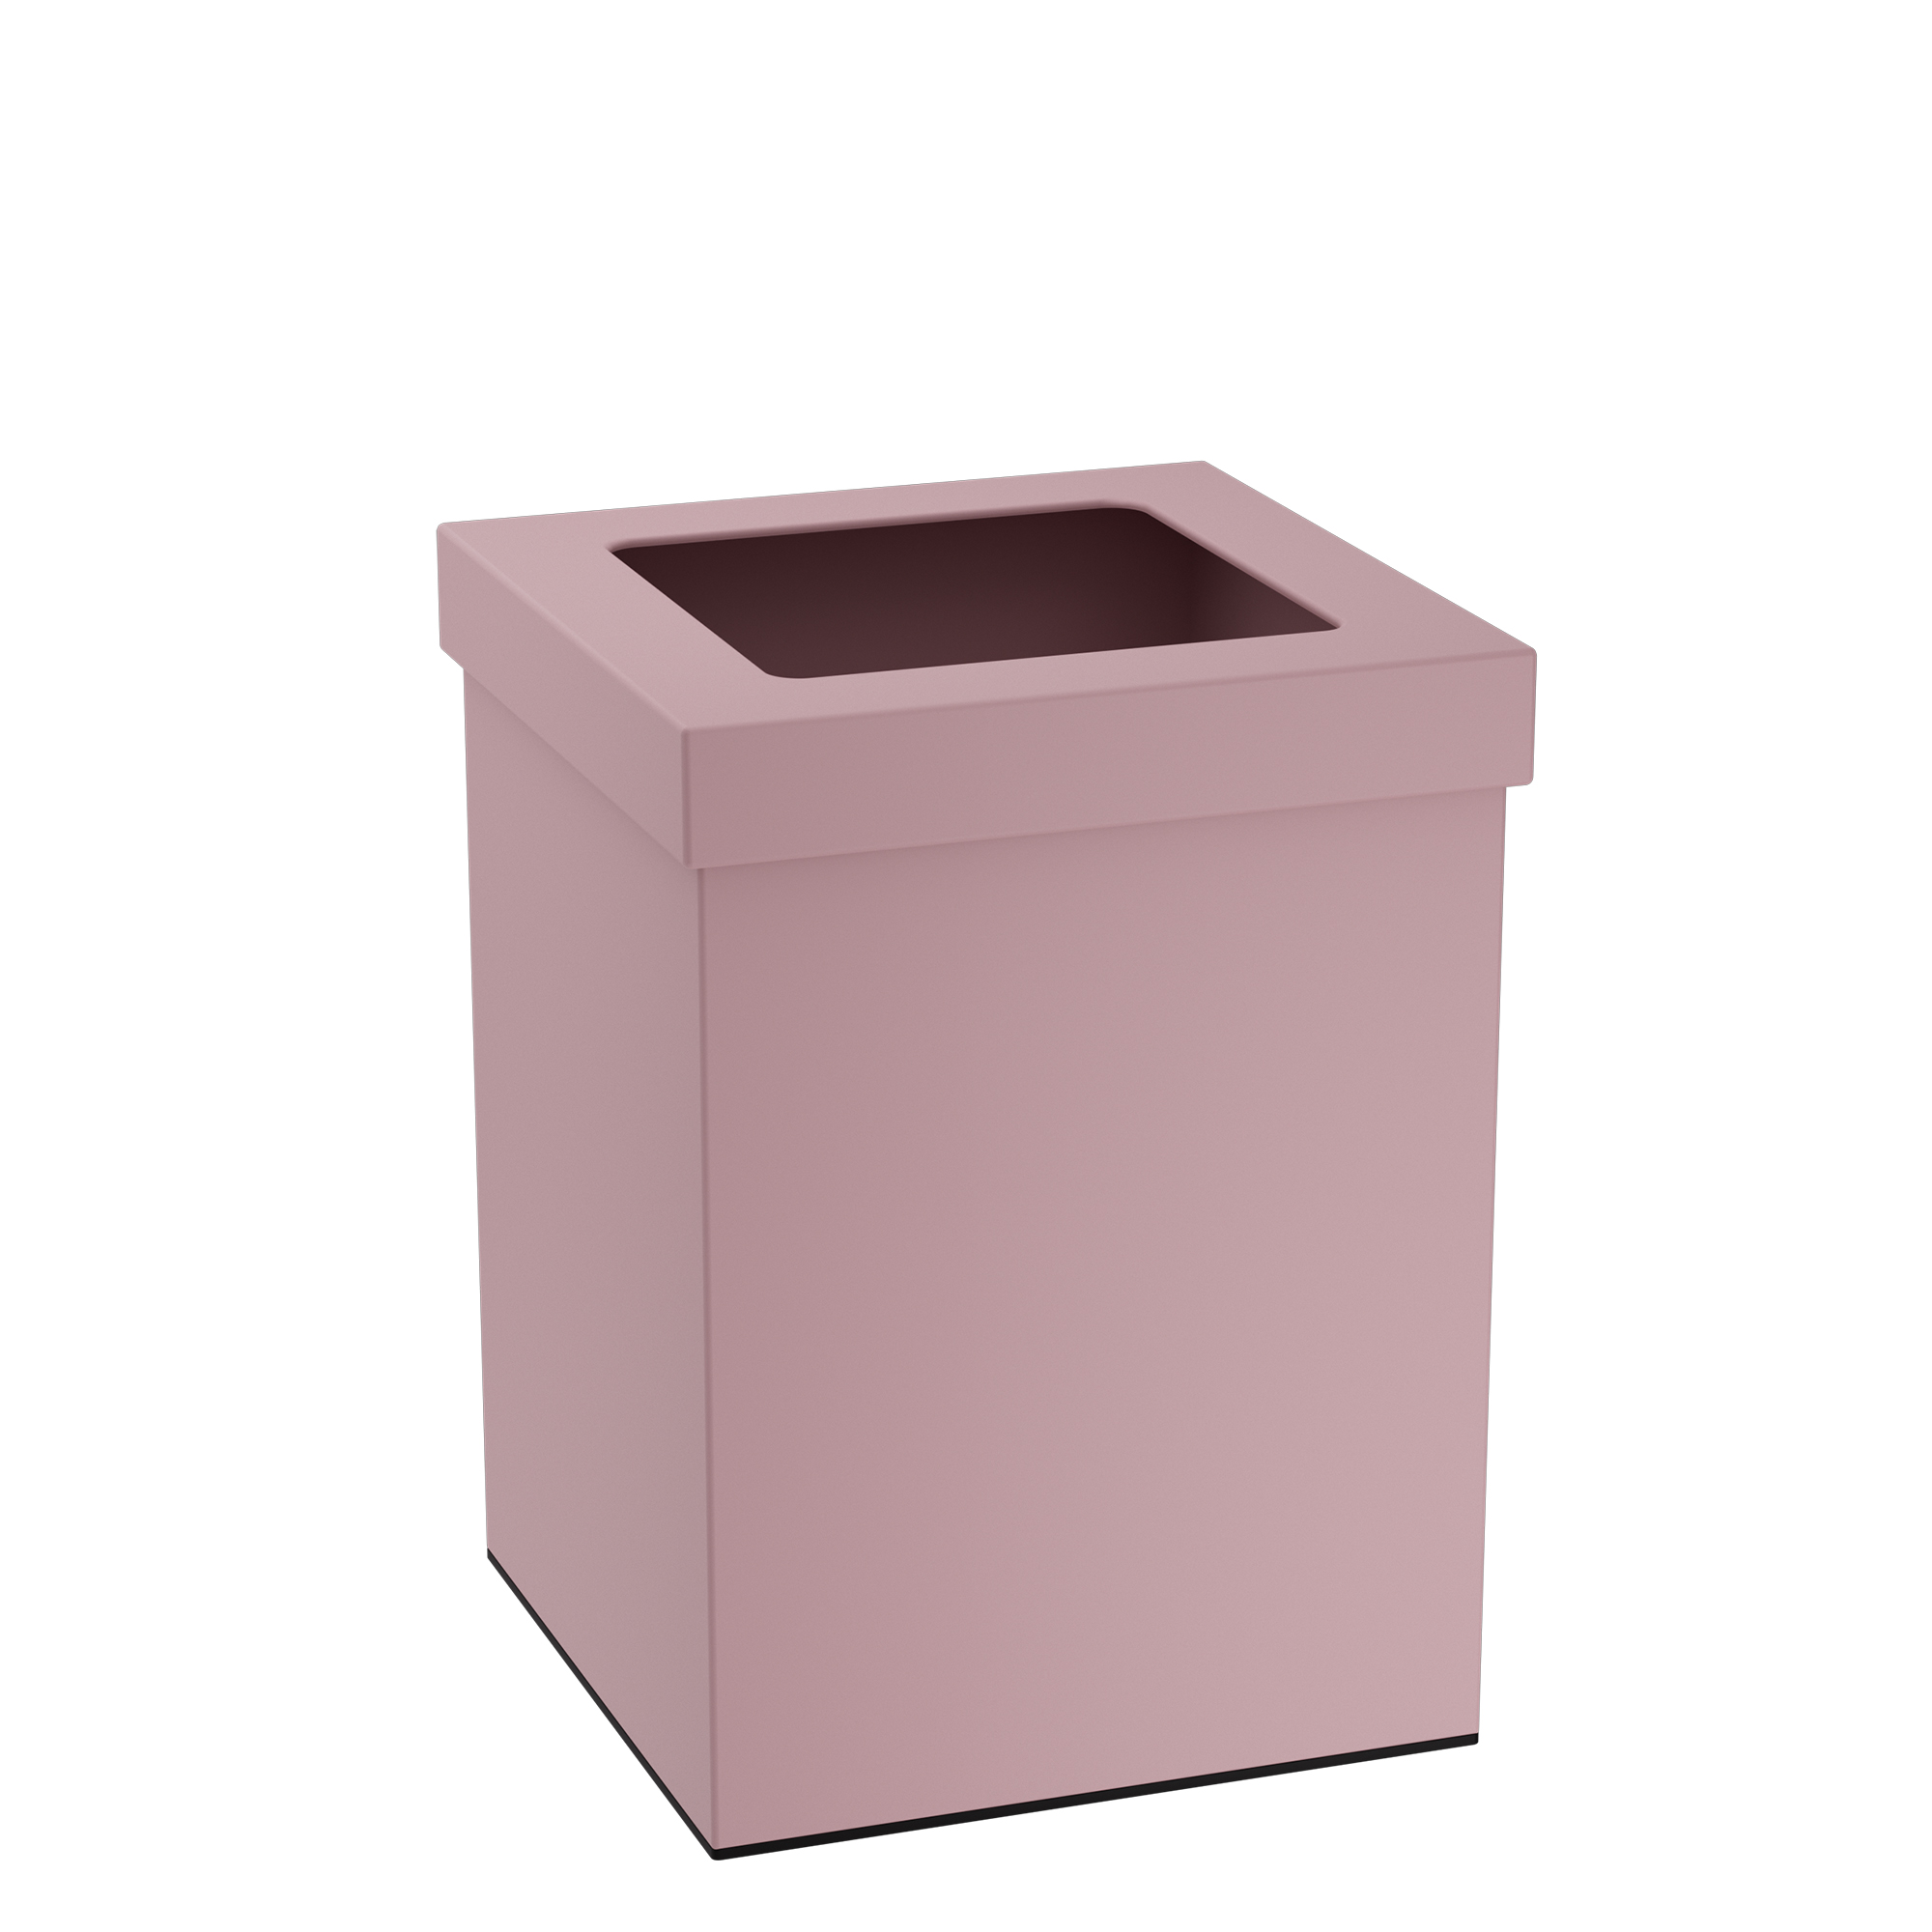 Καλάθι Απορριμμάτων Γραφείου 12lt Ανοξείδωτο Matt Pink Pam & Co 20x20x30εκ. 202030-303 (Υλικό: Ανοξείδωτο, Χρώμα: Ροζ) – Pam & Co – 202030-303